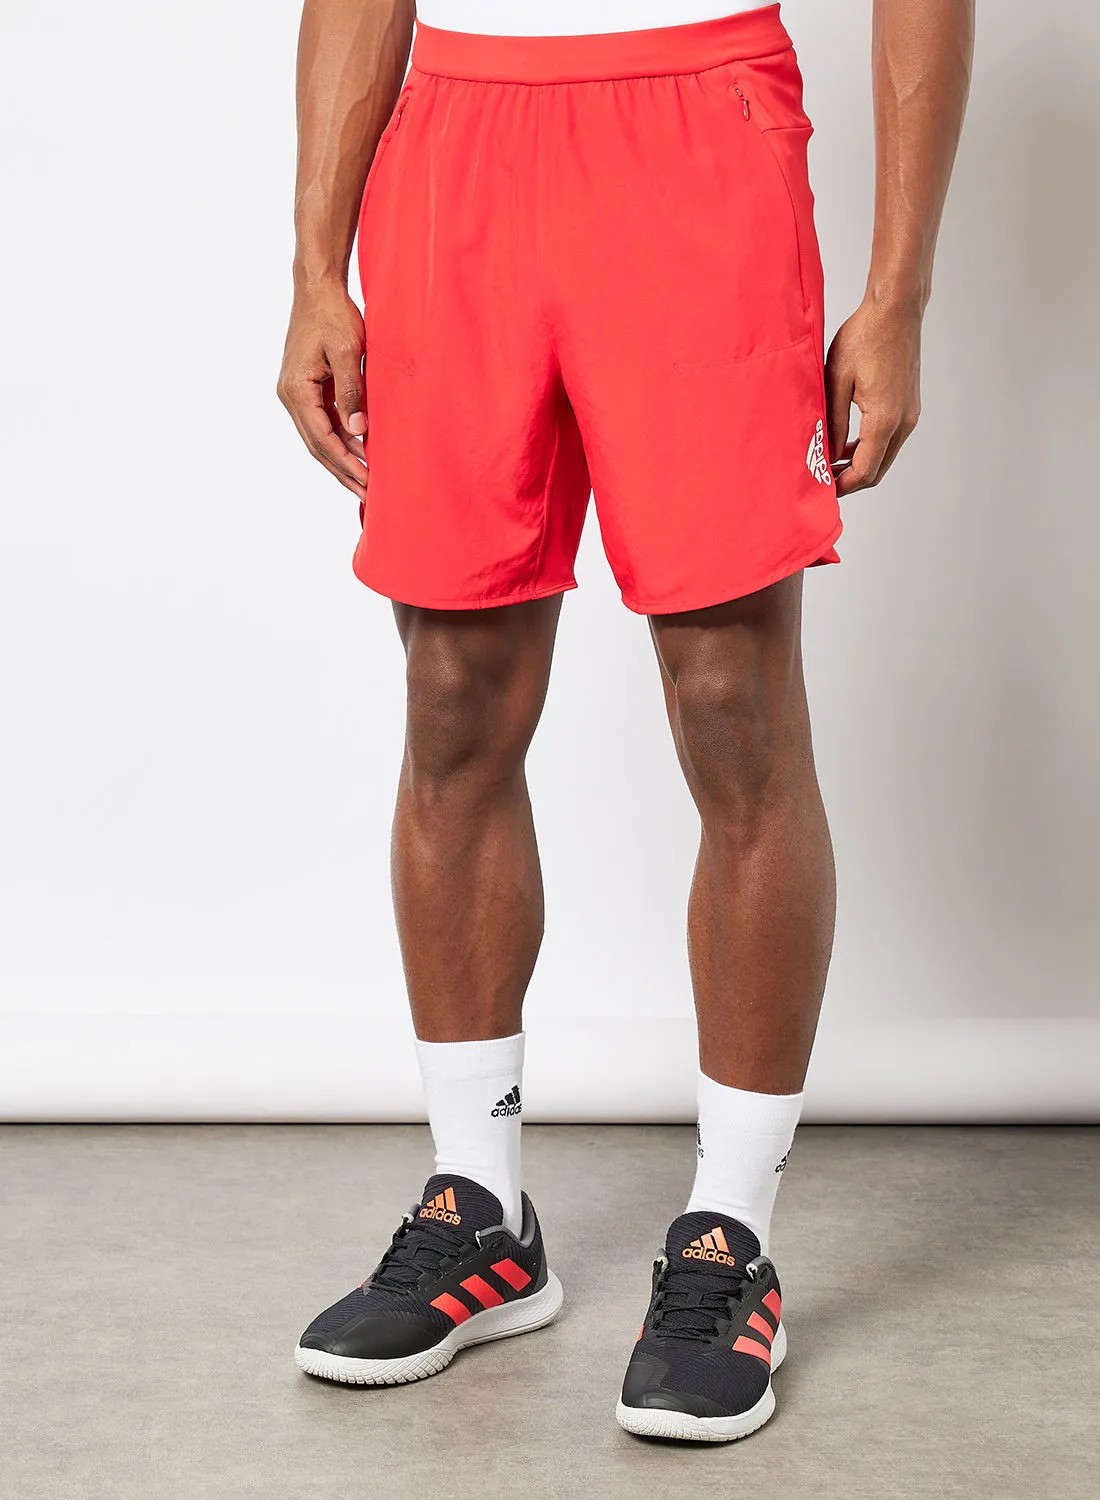 adidas Designed for Training Shorts